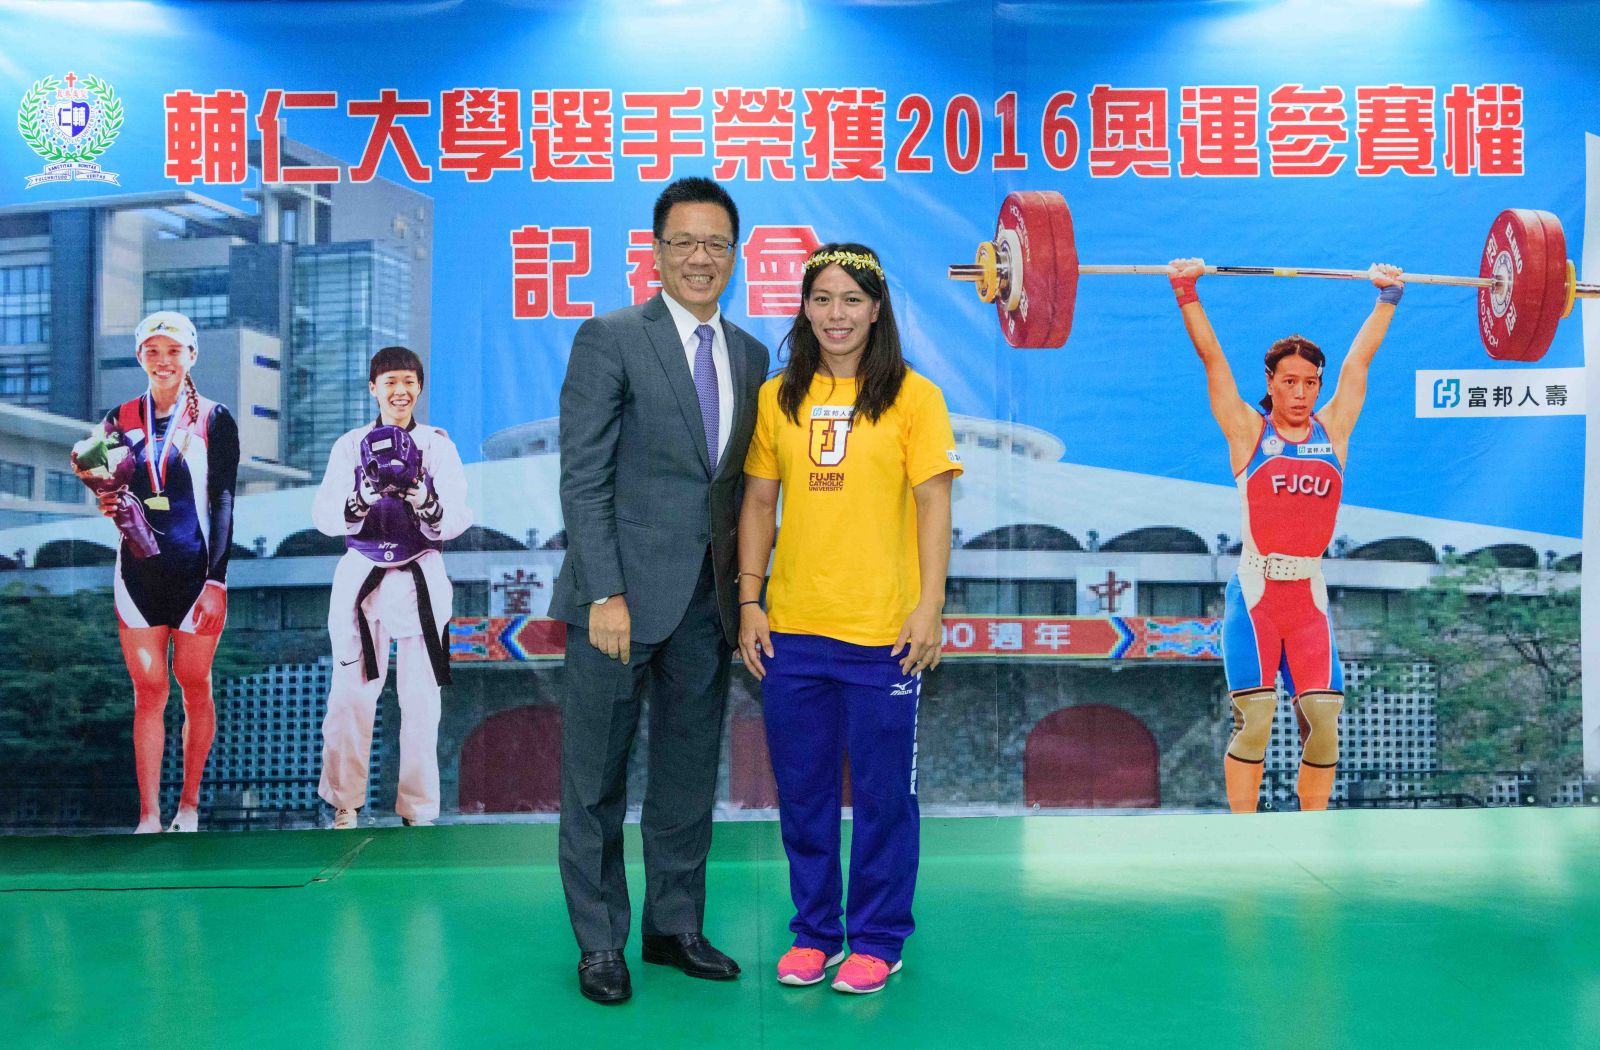 富邦人壽陳俊伴總經理親自為郭婞淳(右)戴上象徵進軍奧運的桂冠。圖/輔仁大學提供